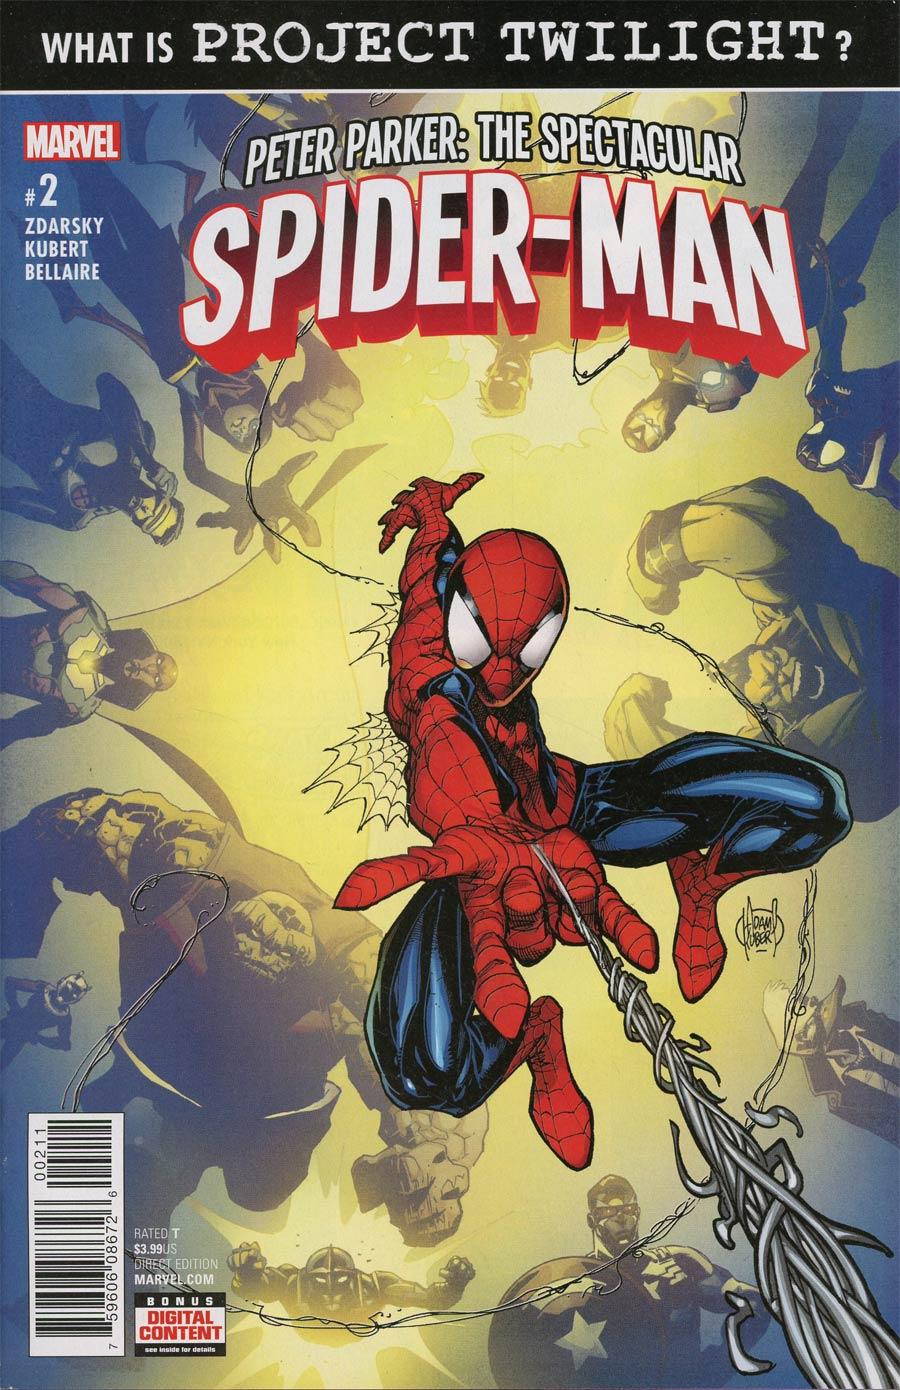 Peter Parker Spectacular Spider-Man Vol. 1 #2